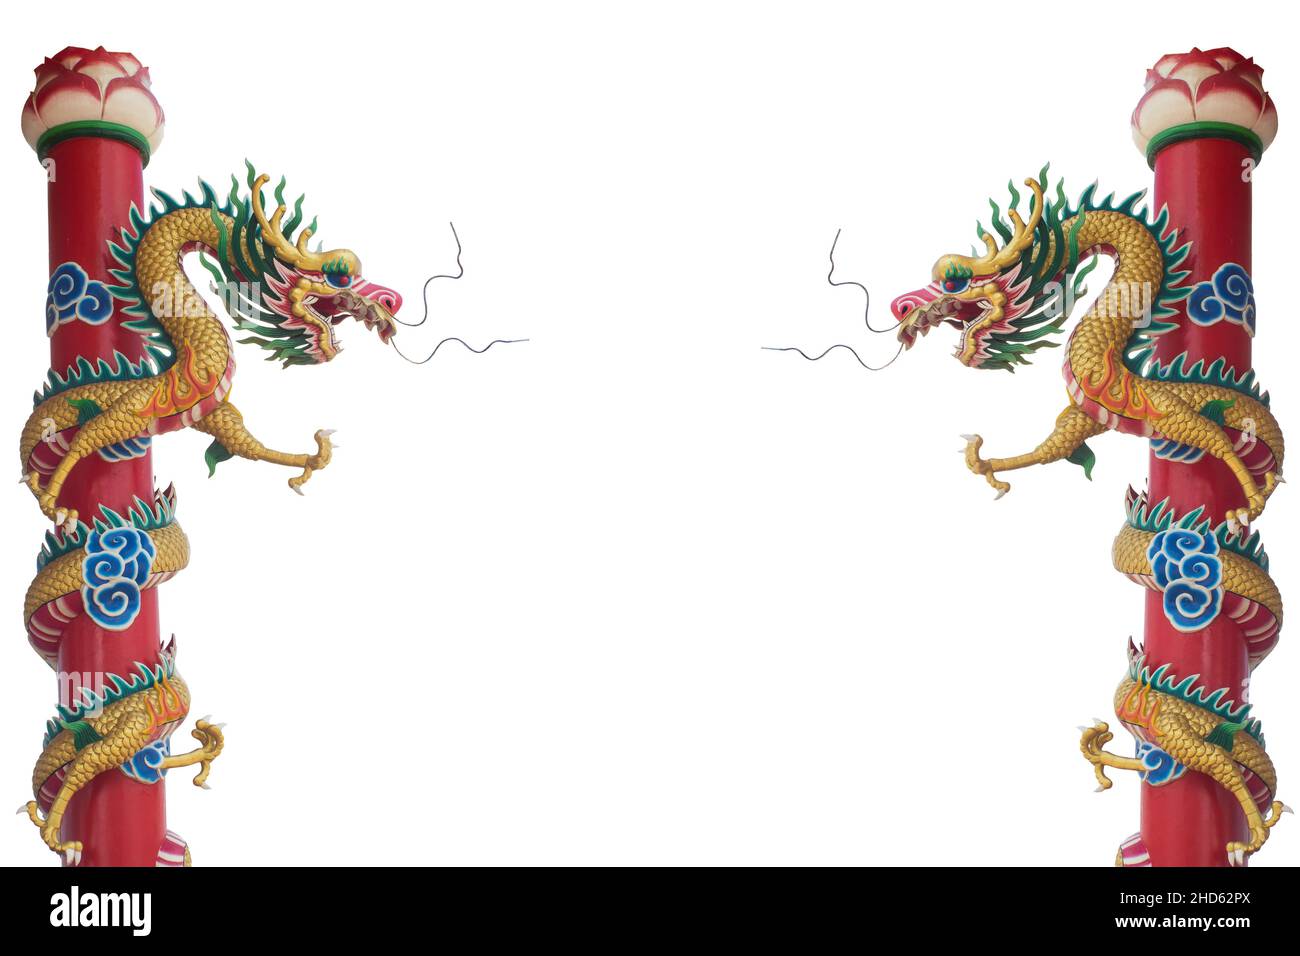 Chinesische Drachen Skulptur Statue tausend Säule Lotus isoliert auf weißem Hintergrund. Statue des chinesischen Drachen im Kloster. Chinesischer Drache ist ein Symbol Stockfoto